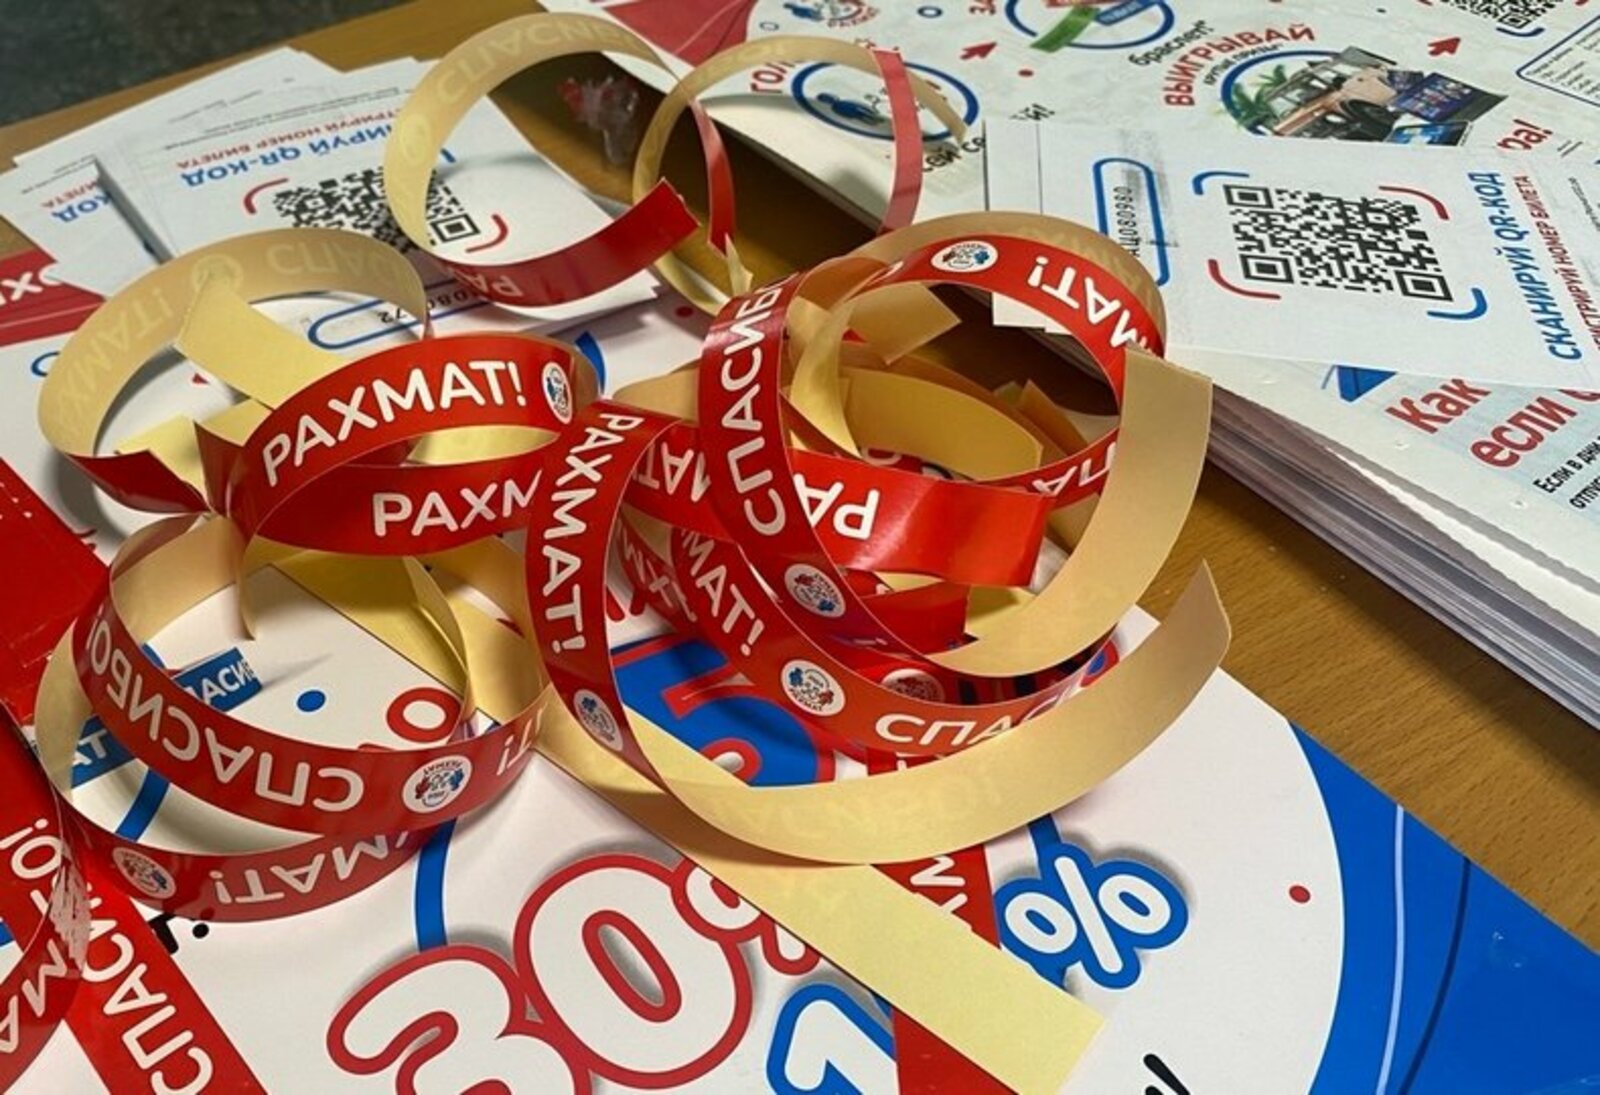 Жители Башкирии смогут регистрировать билеты по акции «Рахмат» до 20 марта